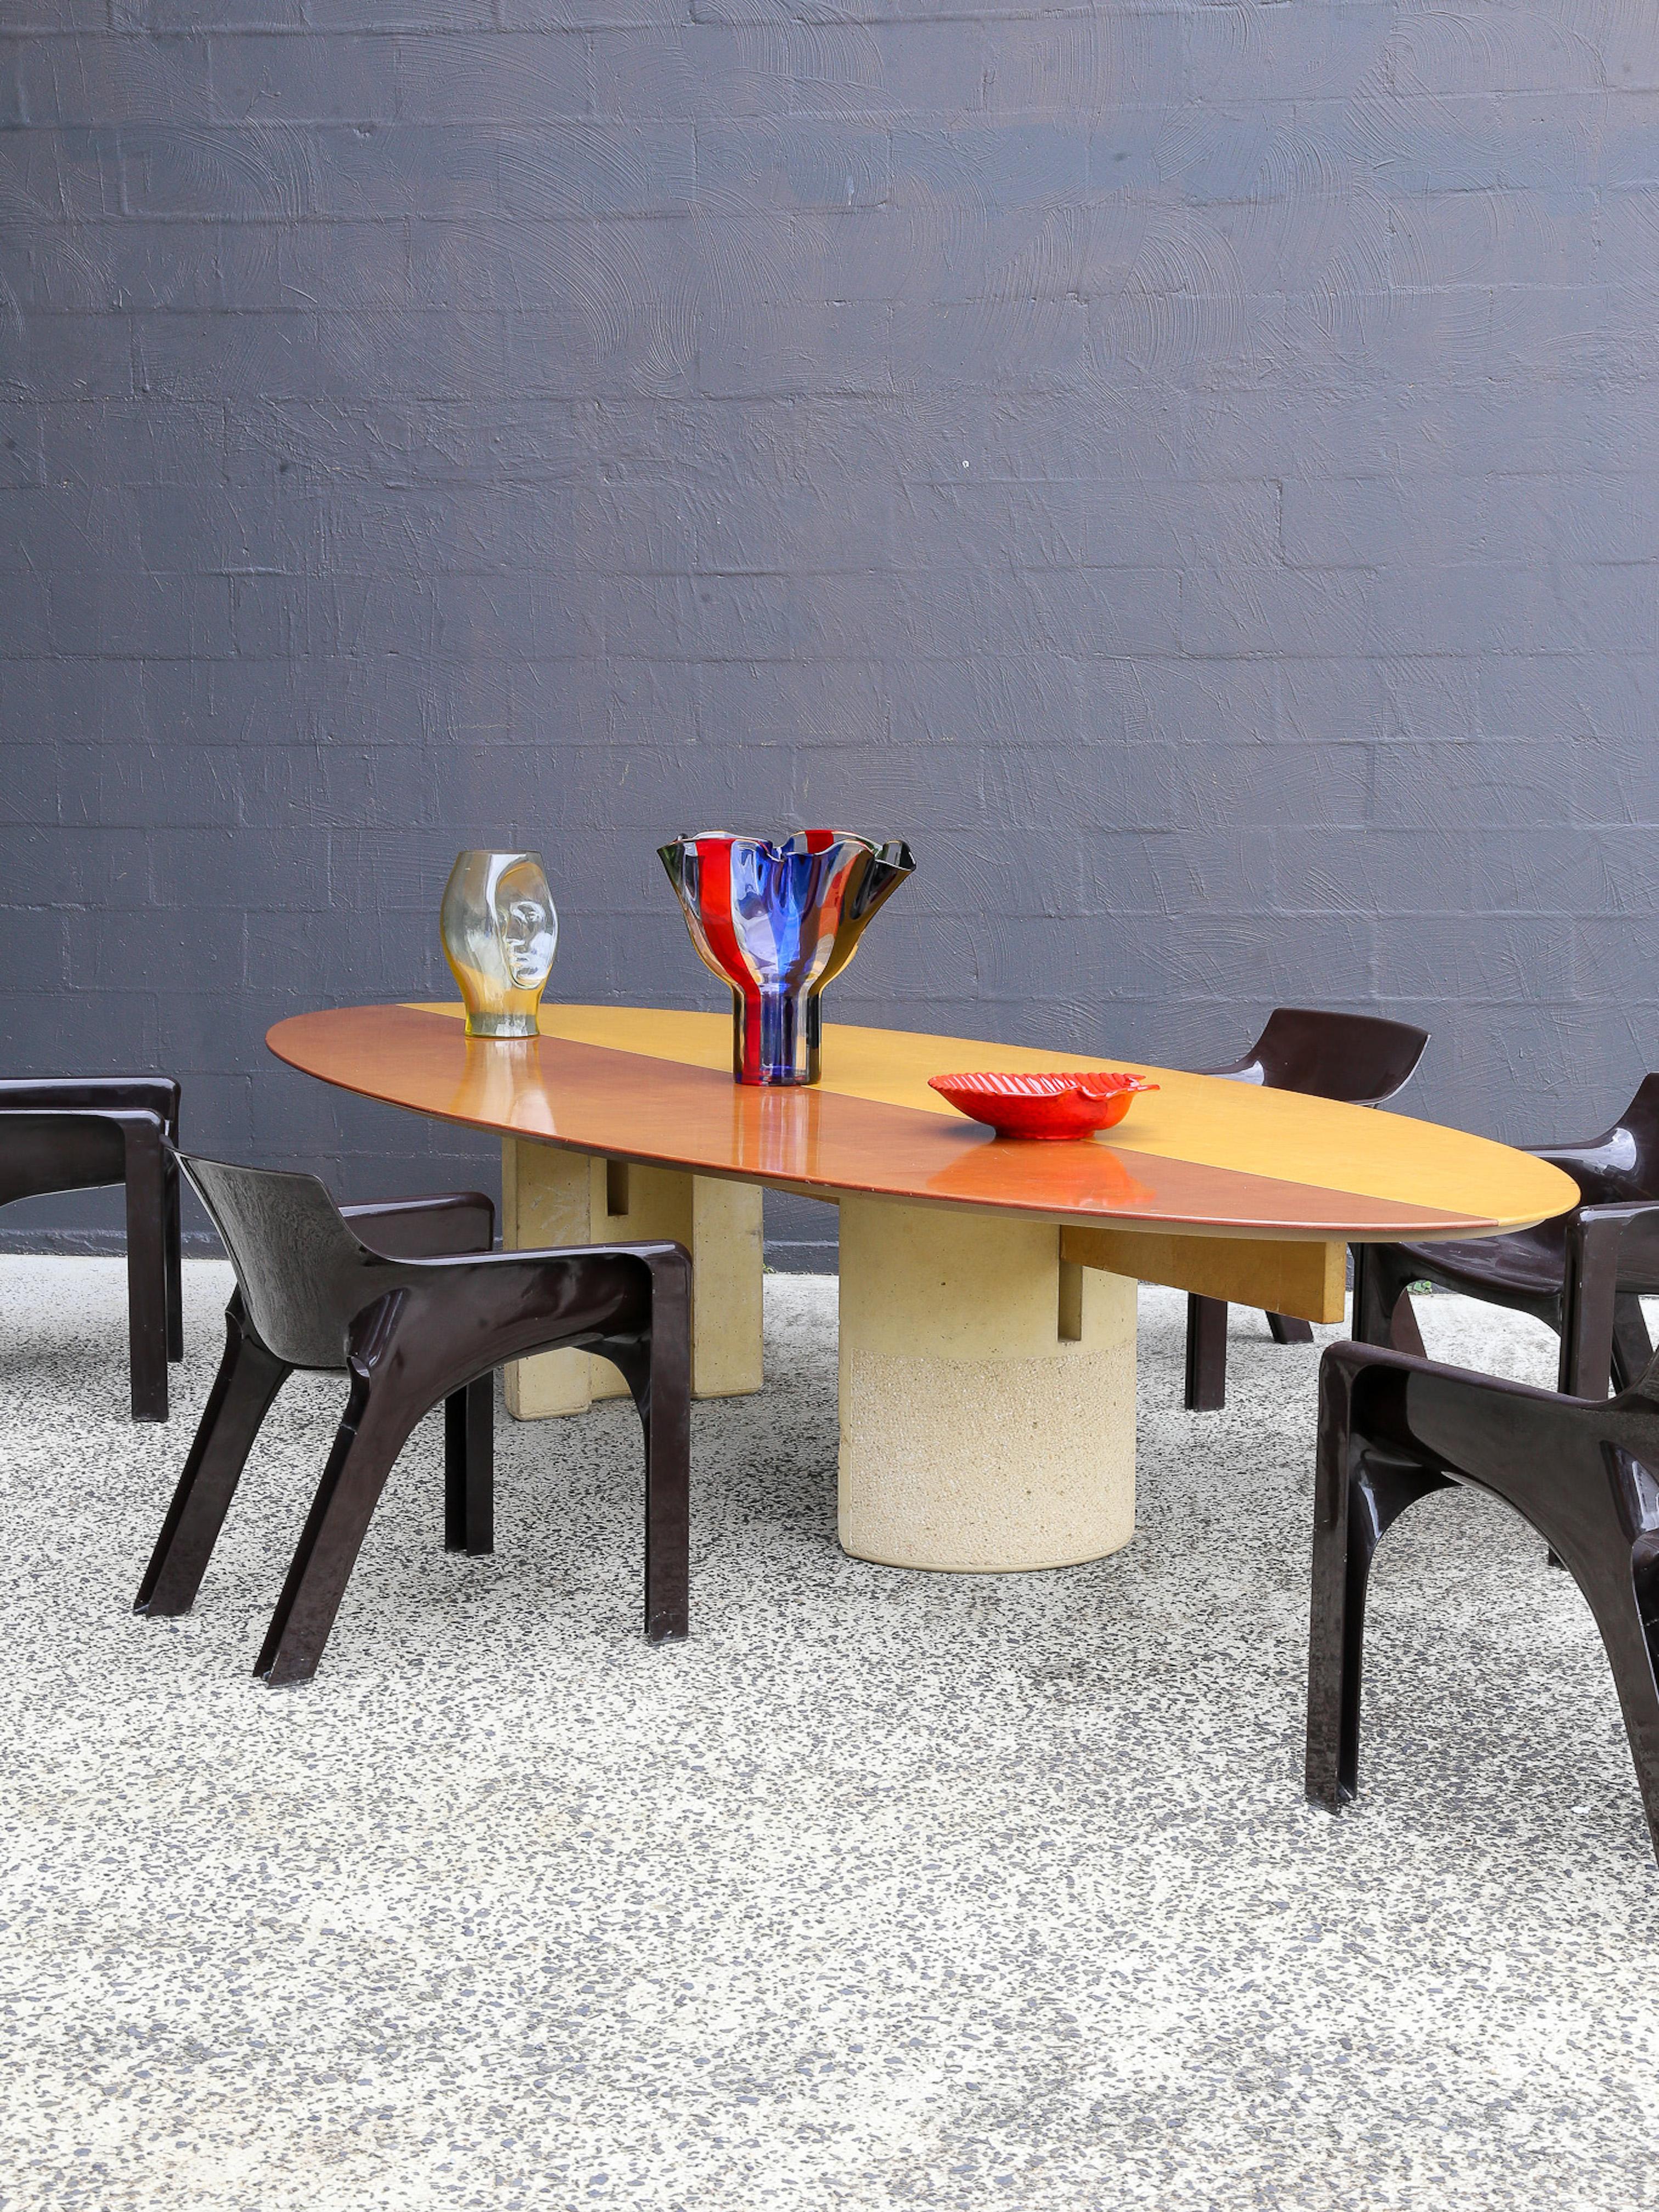 Cette table impressionnante avec des pieds en béton et un plateau en bois a été conçue par Giovanni Offredi per Saporiti dans les années 70. En équilibrant parfaitement la sensation sculpturale du béton avec les tons chauds du bois, cette table se